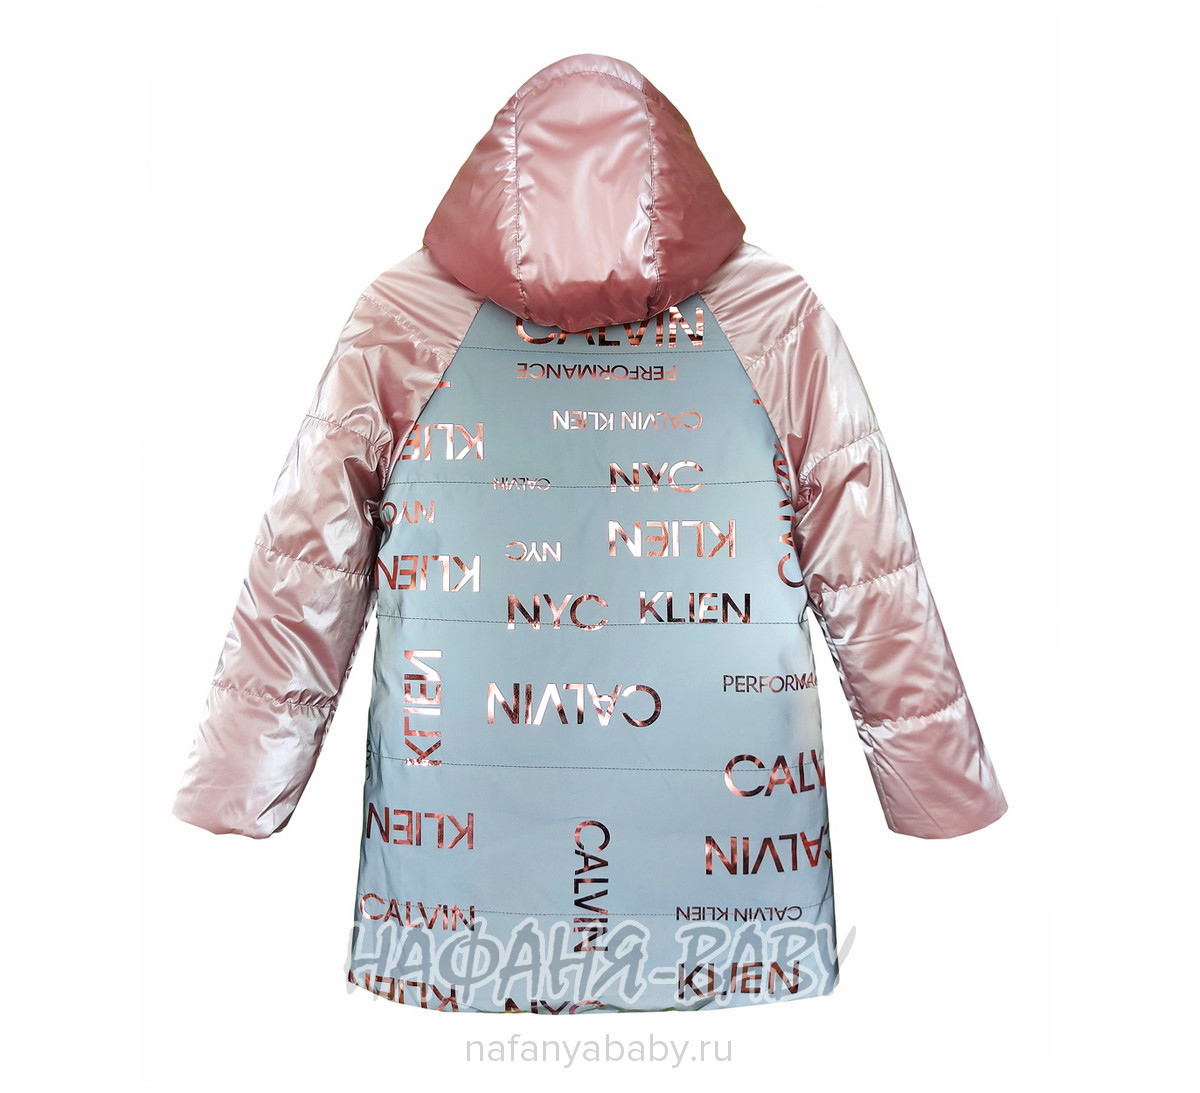 Детская демисезонная куртка YINUO, купить в интернет магазине Нафаня. арт: 2118.